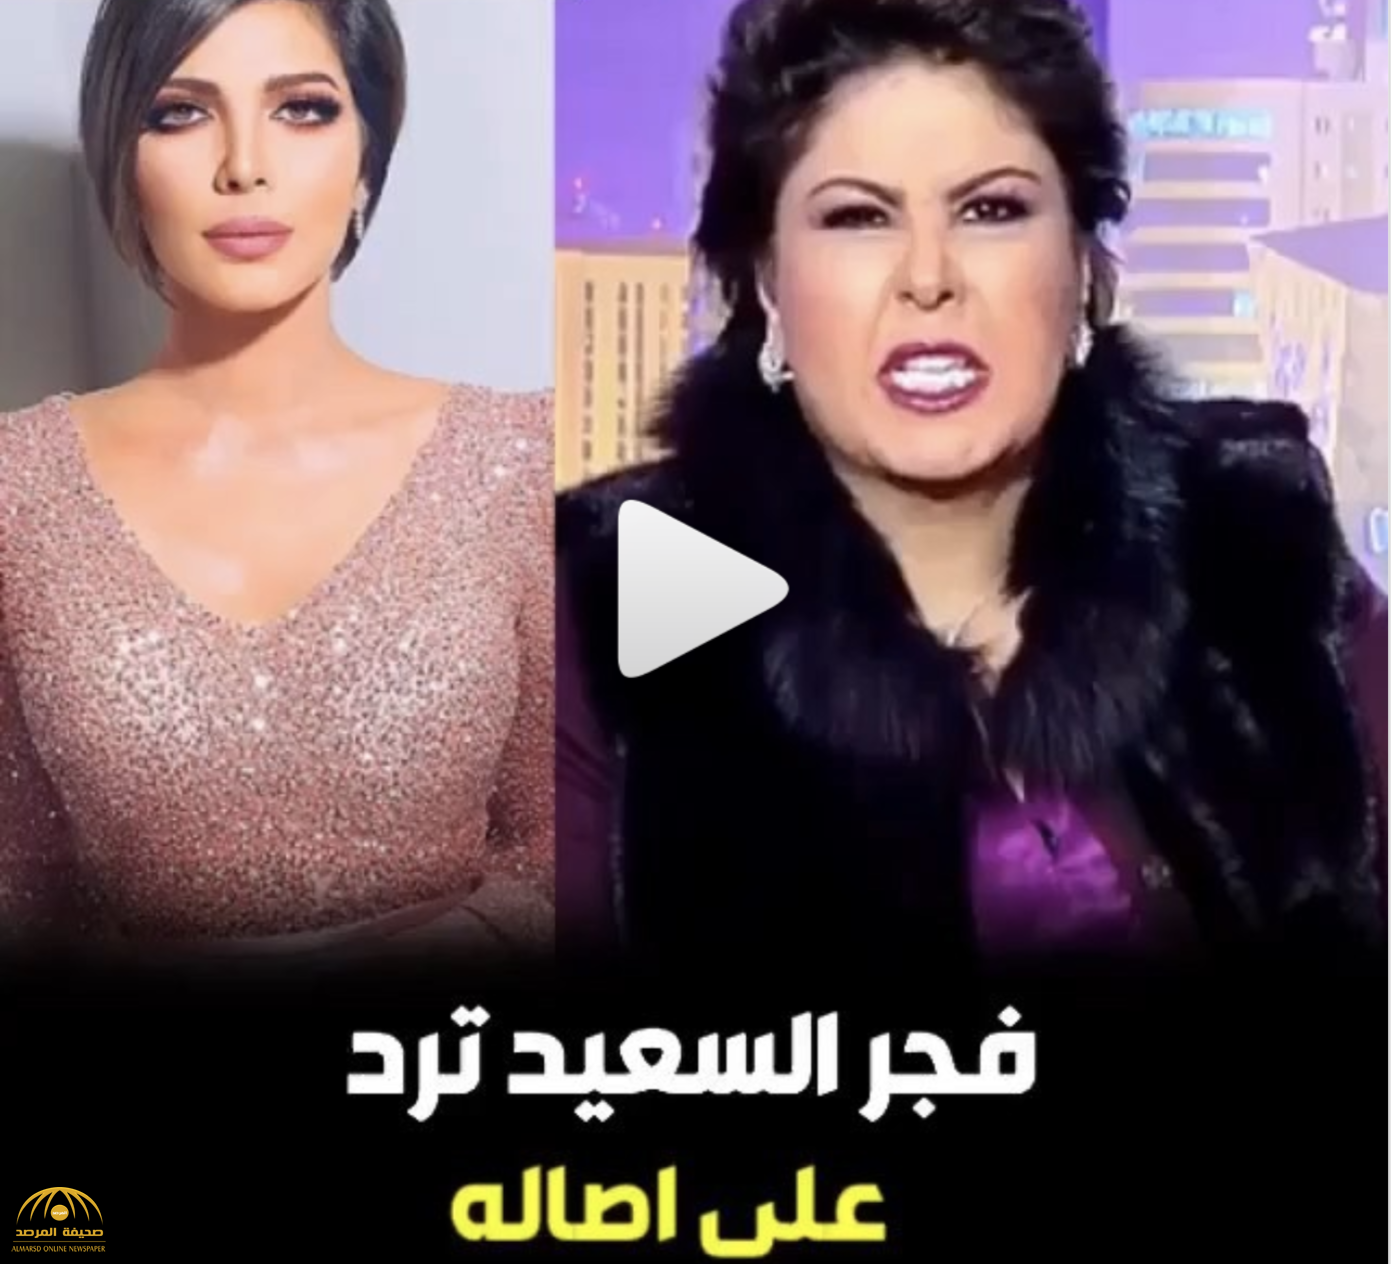 بالفيديو: فجر السعيد تهدد "  أصالة نصري" كذابة وفيك خير اقلبيها حرب شعواء!